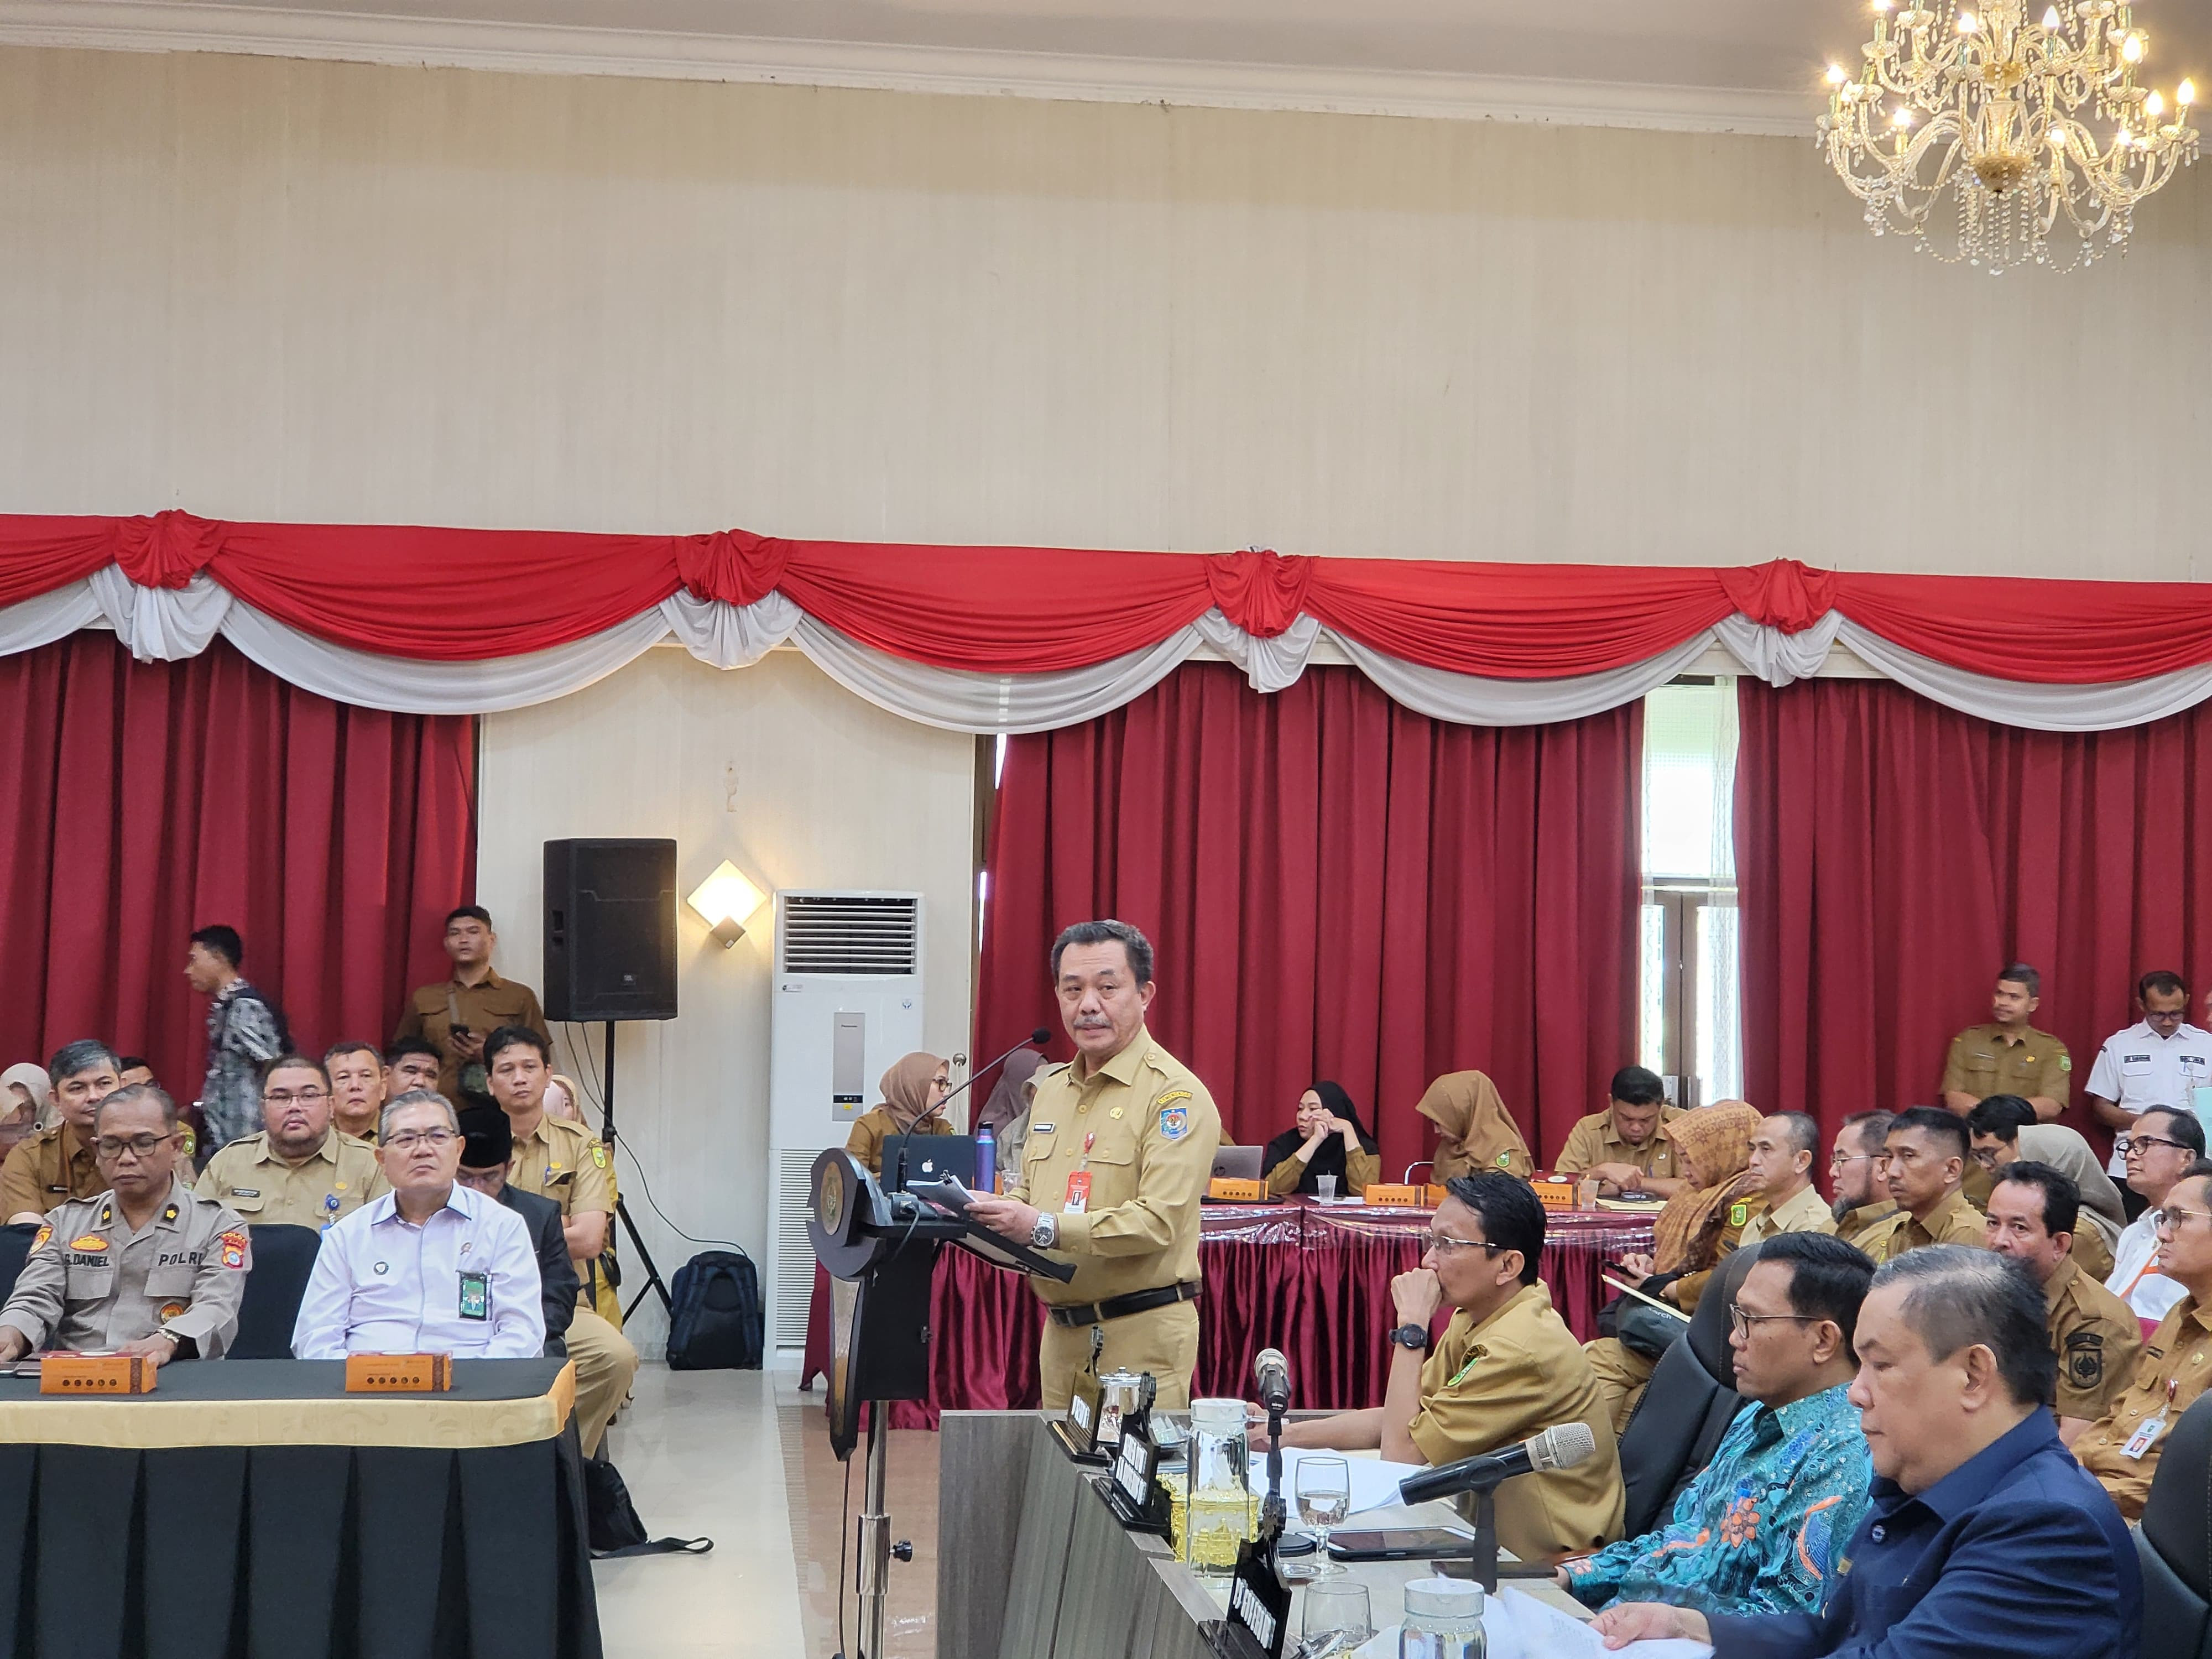 Kawal Musrenbang di Riau, Kemendagri Sebut Pentingnya Pembangunan Berbasis Partisipatif - JPNN.com